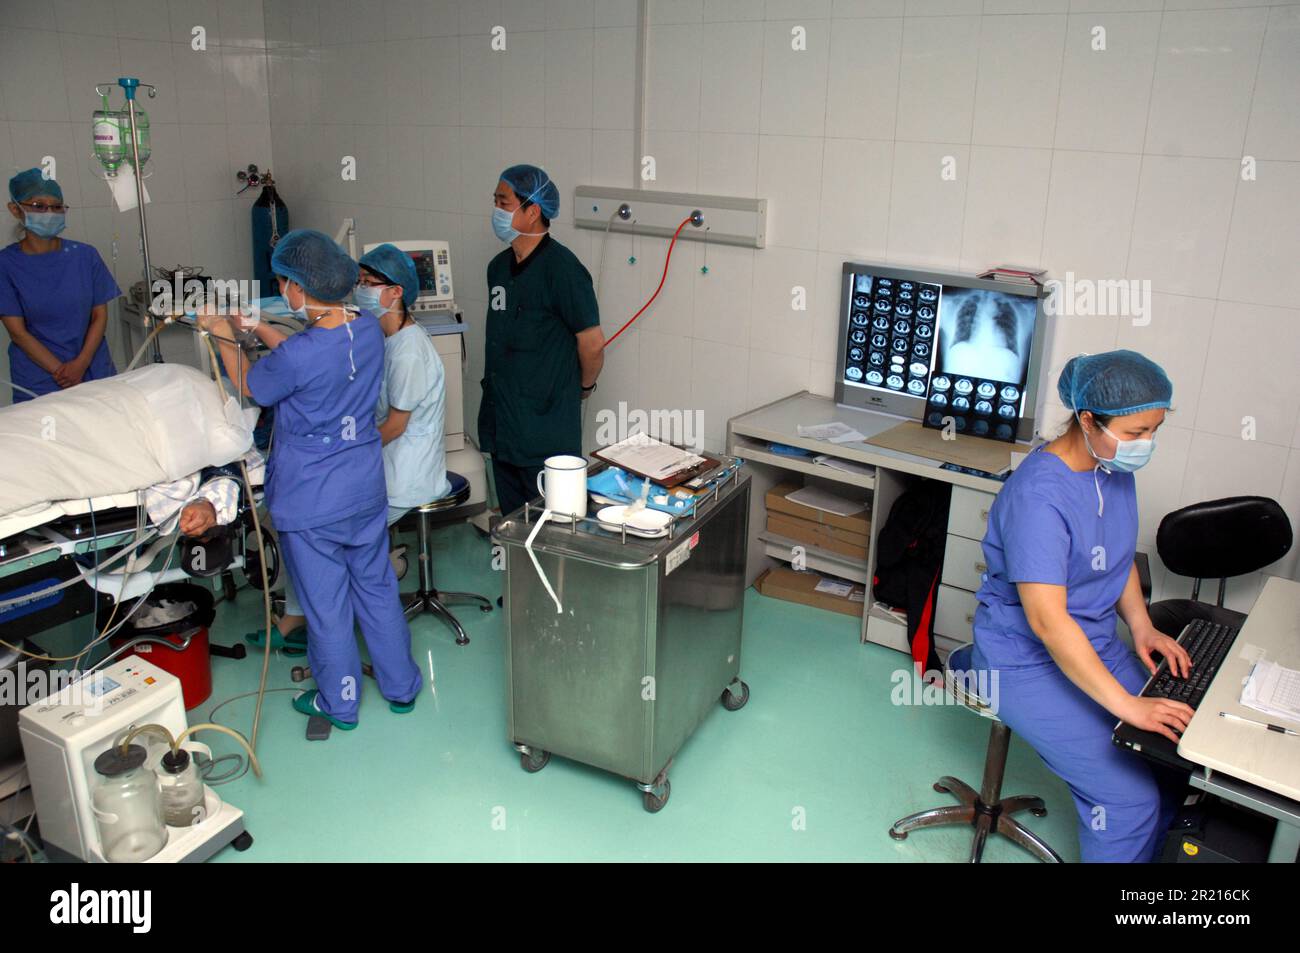 Ausländische Experten aus verschiedenen Bereichen besuchen das Pneumokoniose- und Rehabilitationszentrum und Krankenhaus Beihaide in Beidaihe, Provinz Hebei, um die Behandlung und Rehabilitation von Pneumokoniose-Kranken zu sehen viele, die sich einer „Lungenwäsche“ unterzogen haben Stockfoto